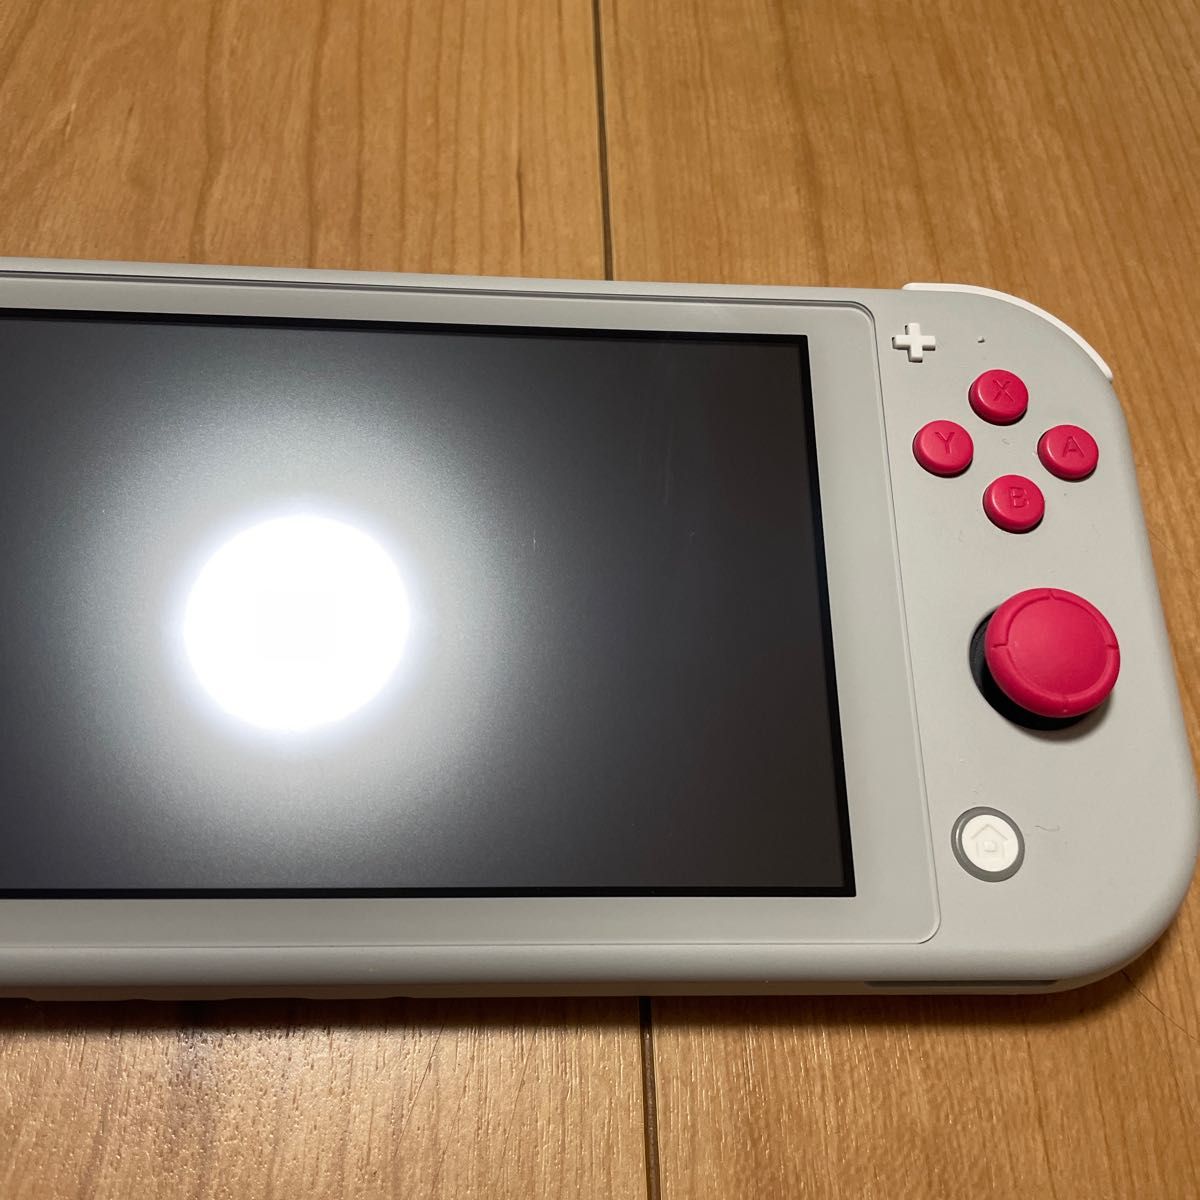 921【2019年製】Nintendo Switch Lite ザシアン・ザマゼンタ 本体のみ